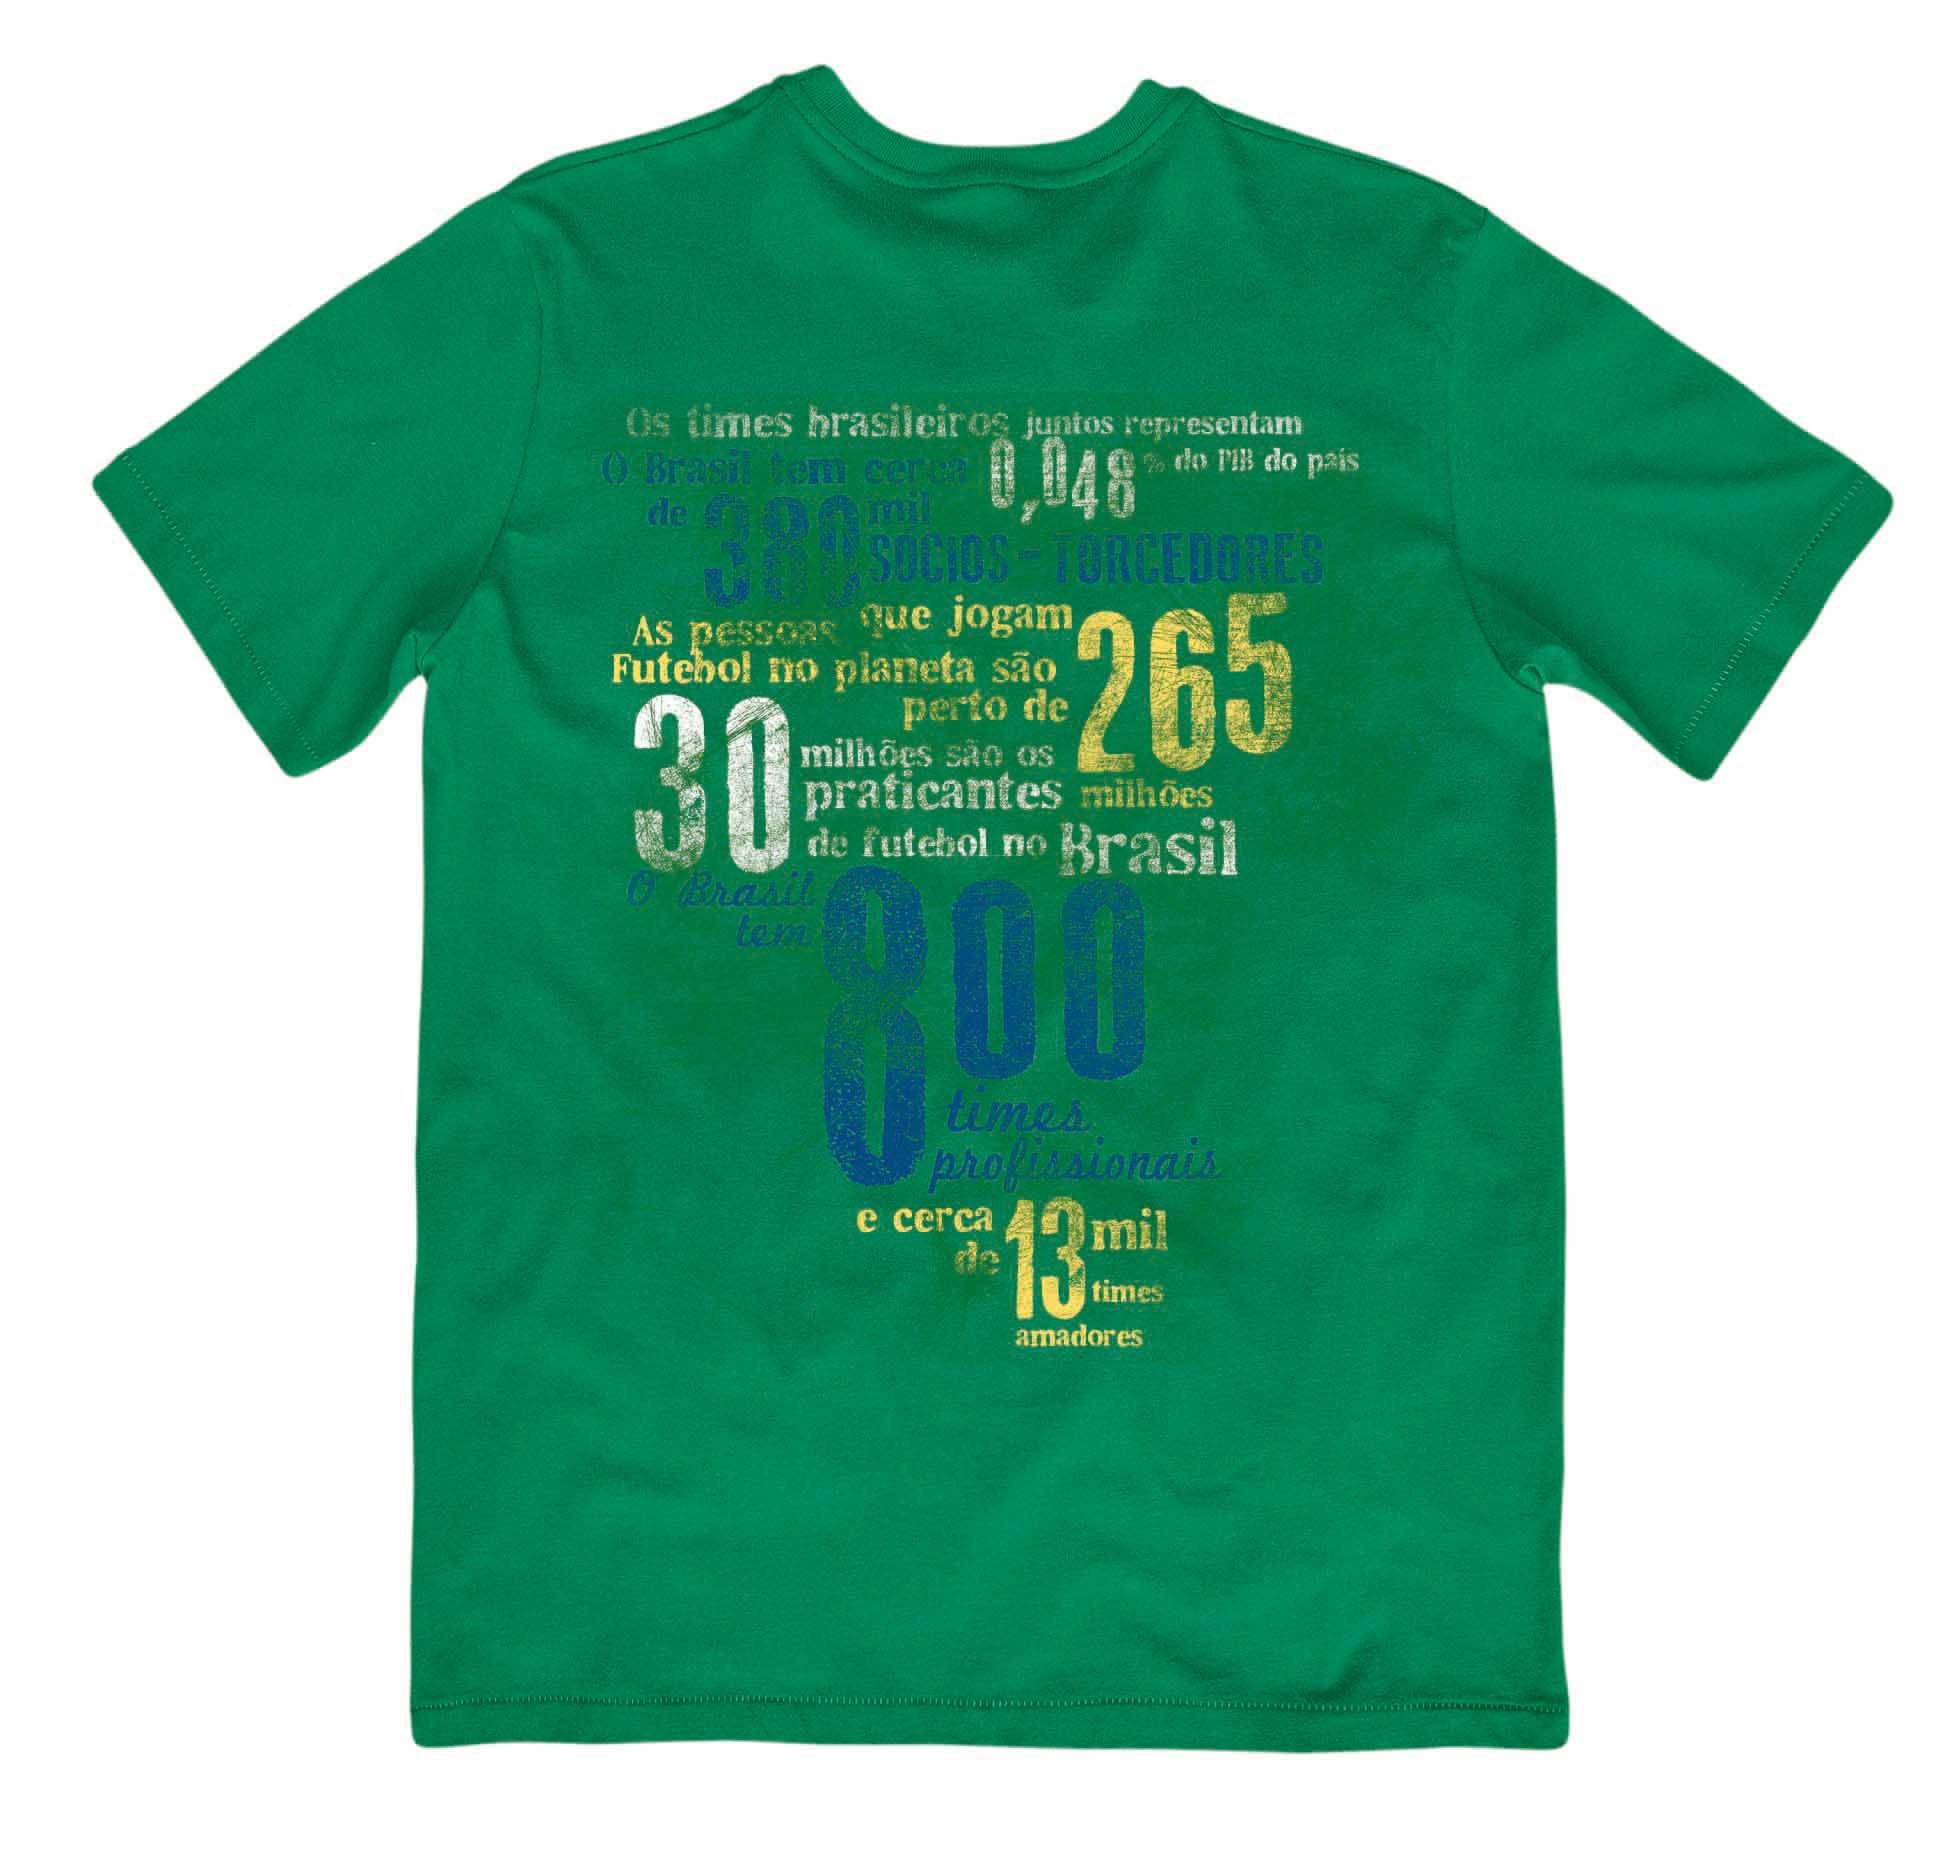 Camiseta verde estampada com frases de futebol sobre o Brasil.